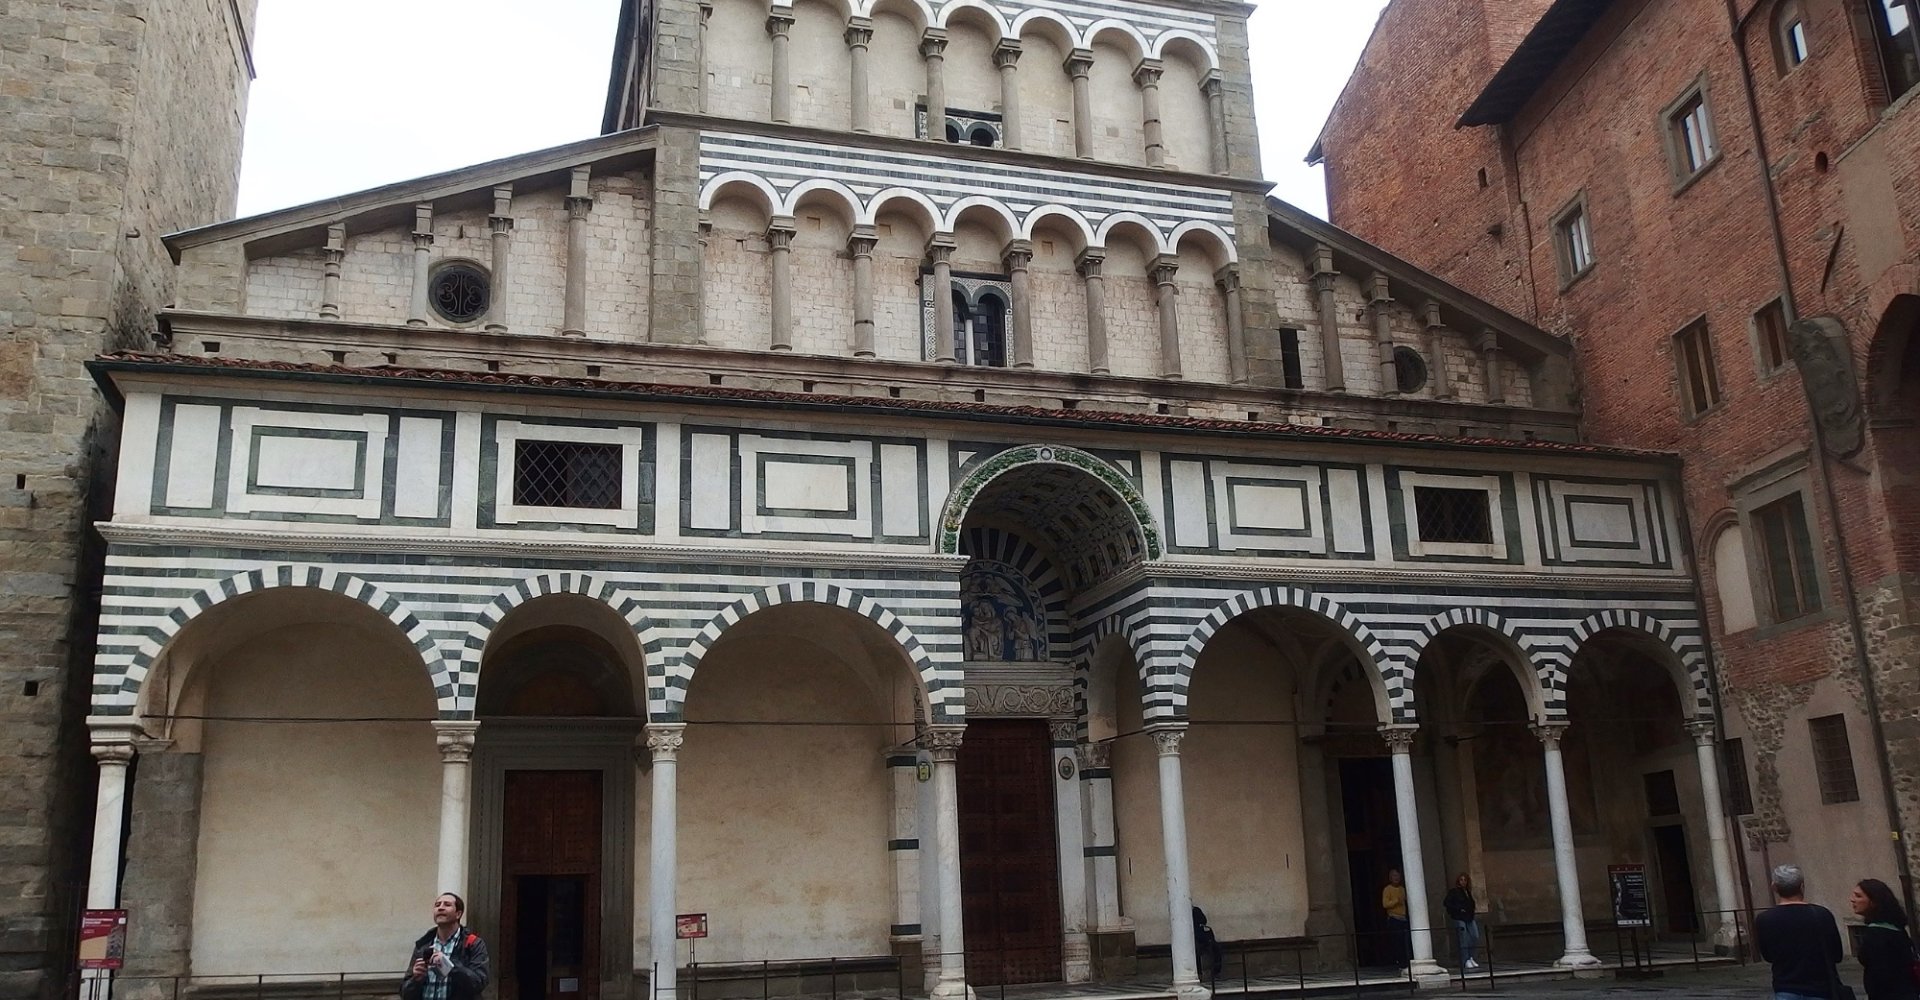 Facciata della Cattedrale di San Zeno, Pistoia